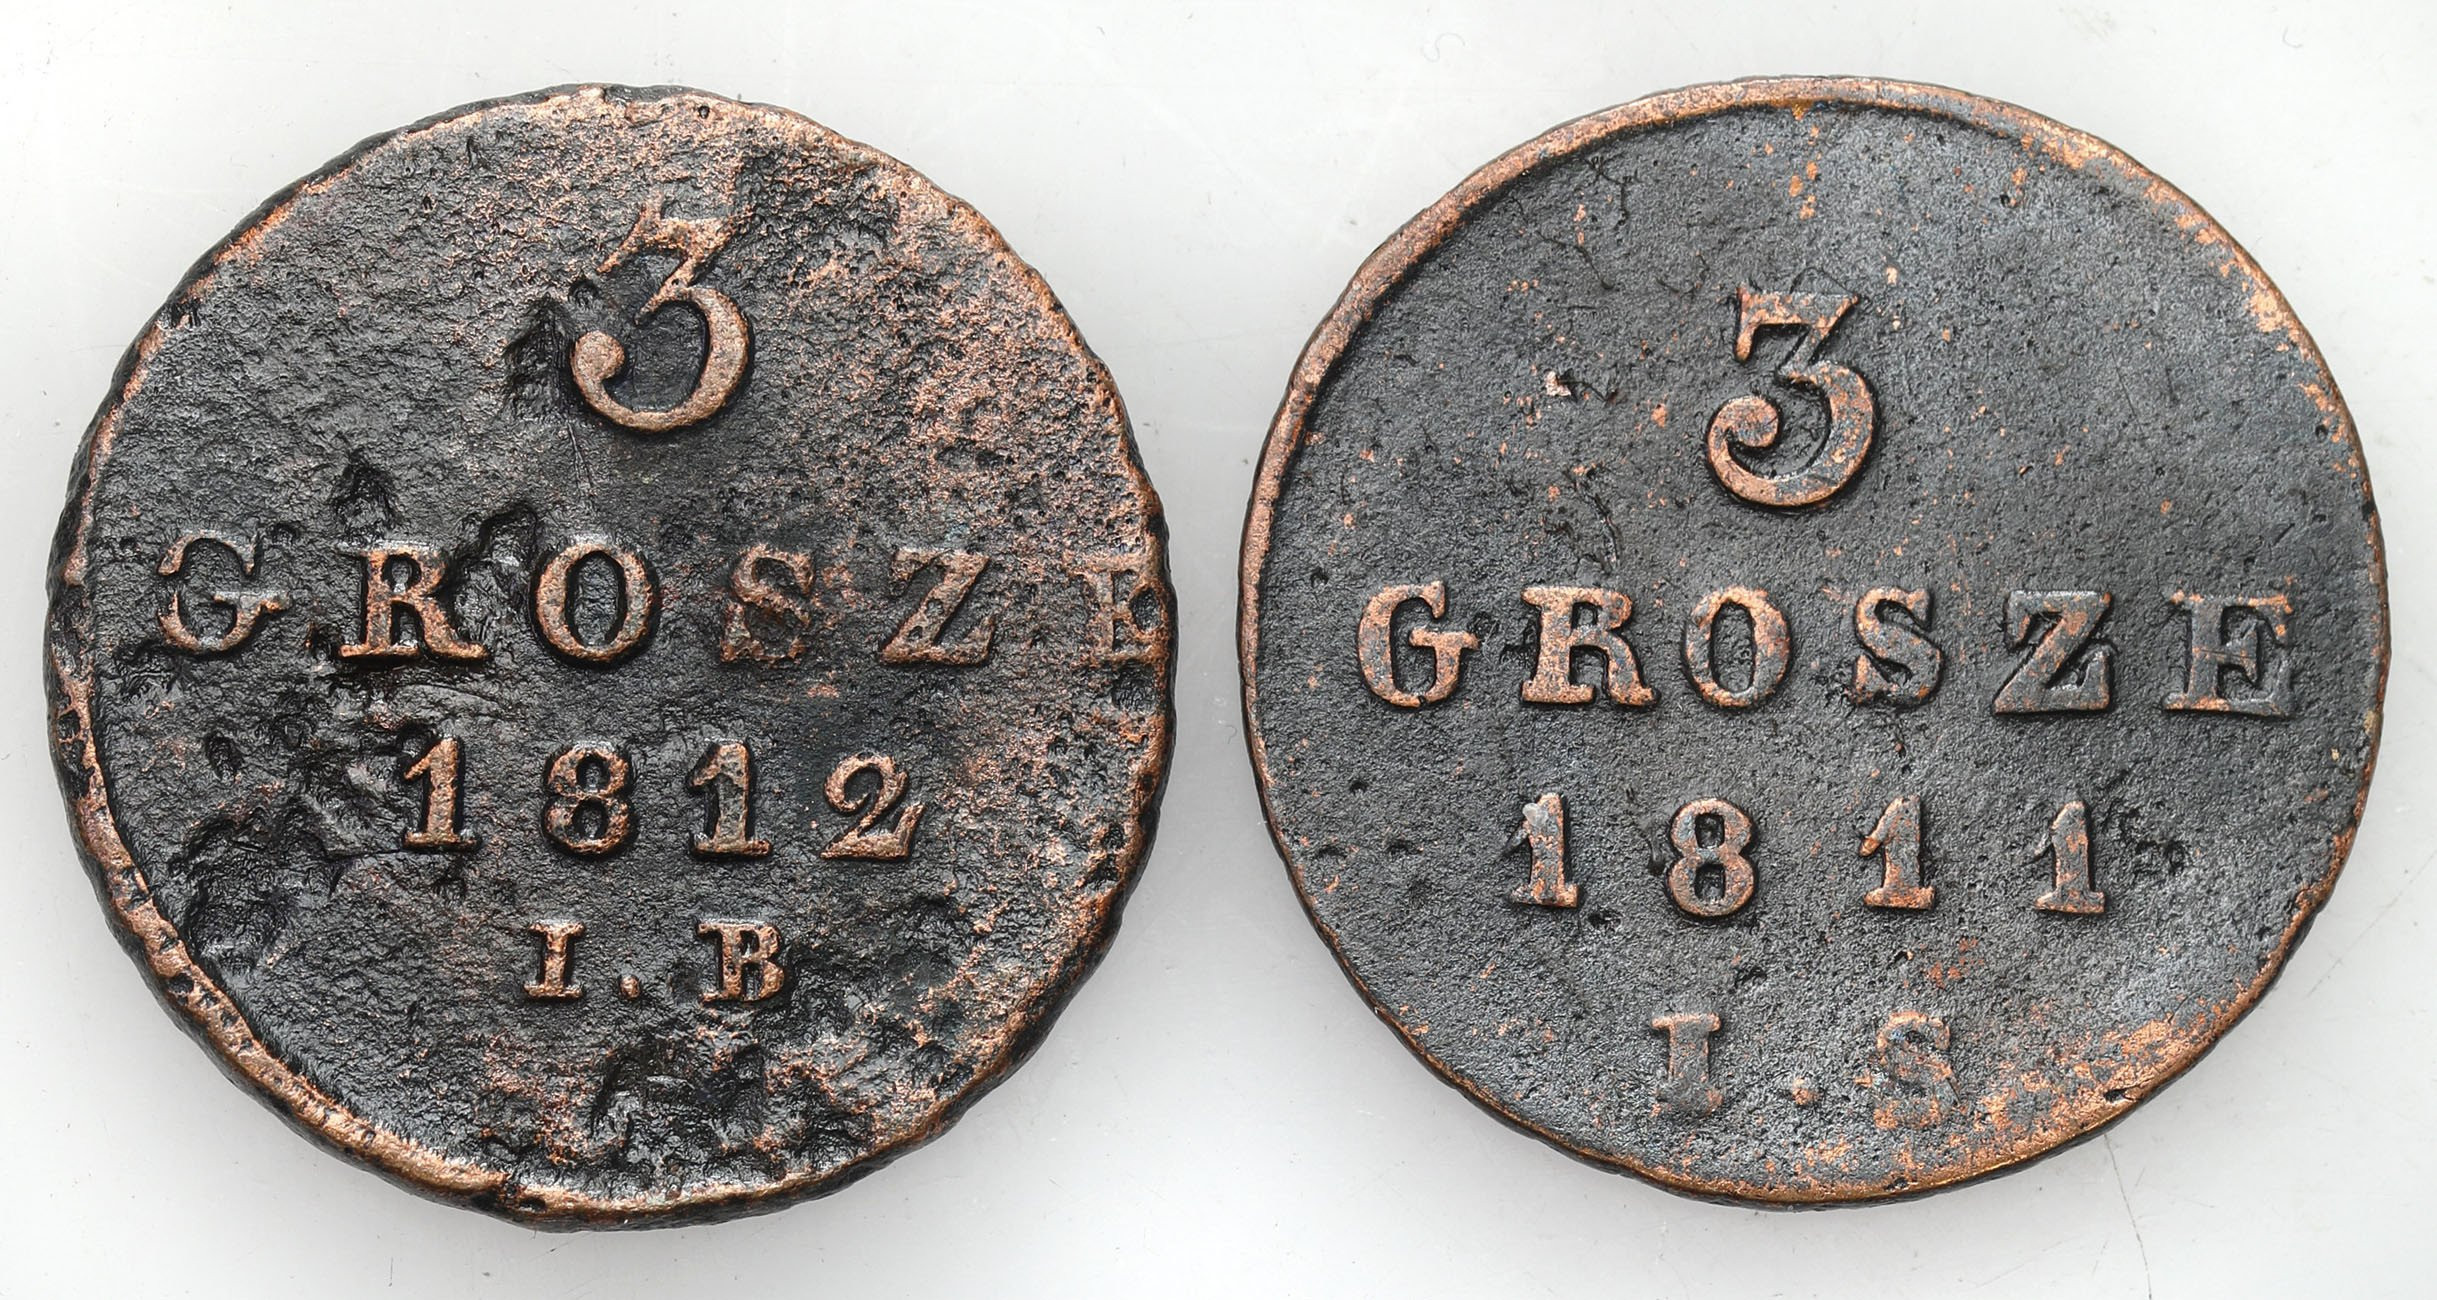 Księstwo Warszawskie. Trojak (3 grosze) 1811 IS i 1812 IB, Warszawa, zestaw 3 monet